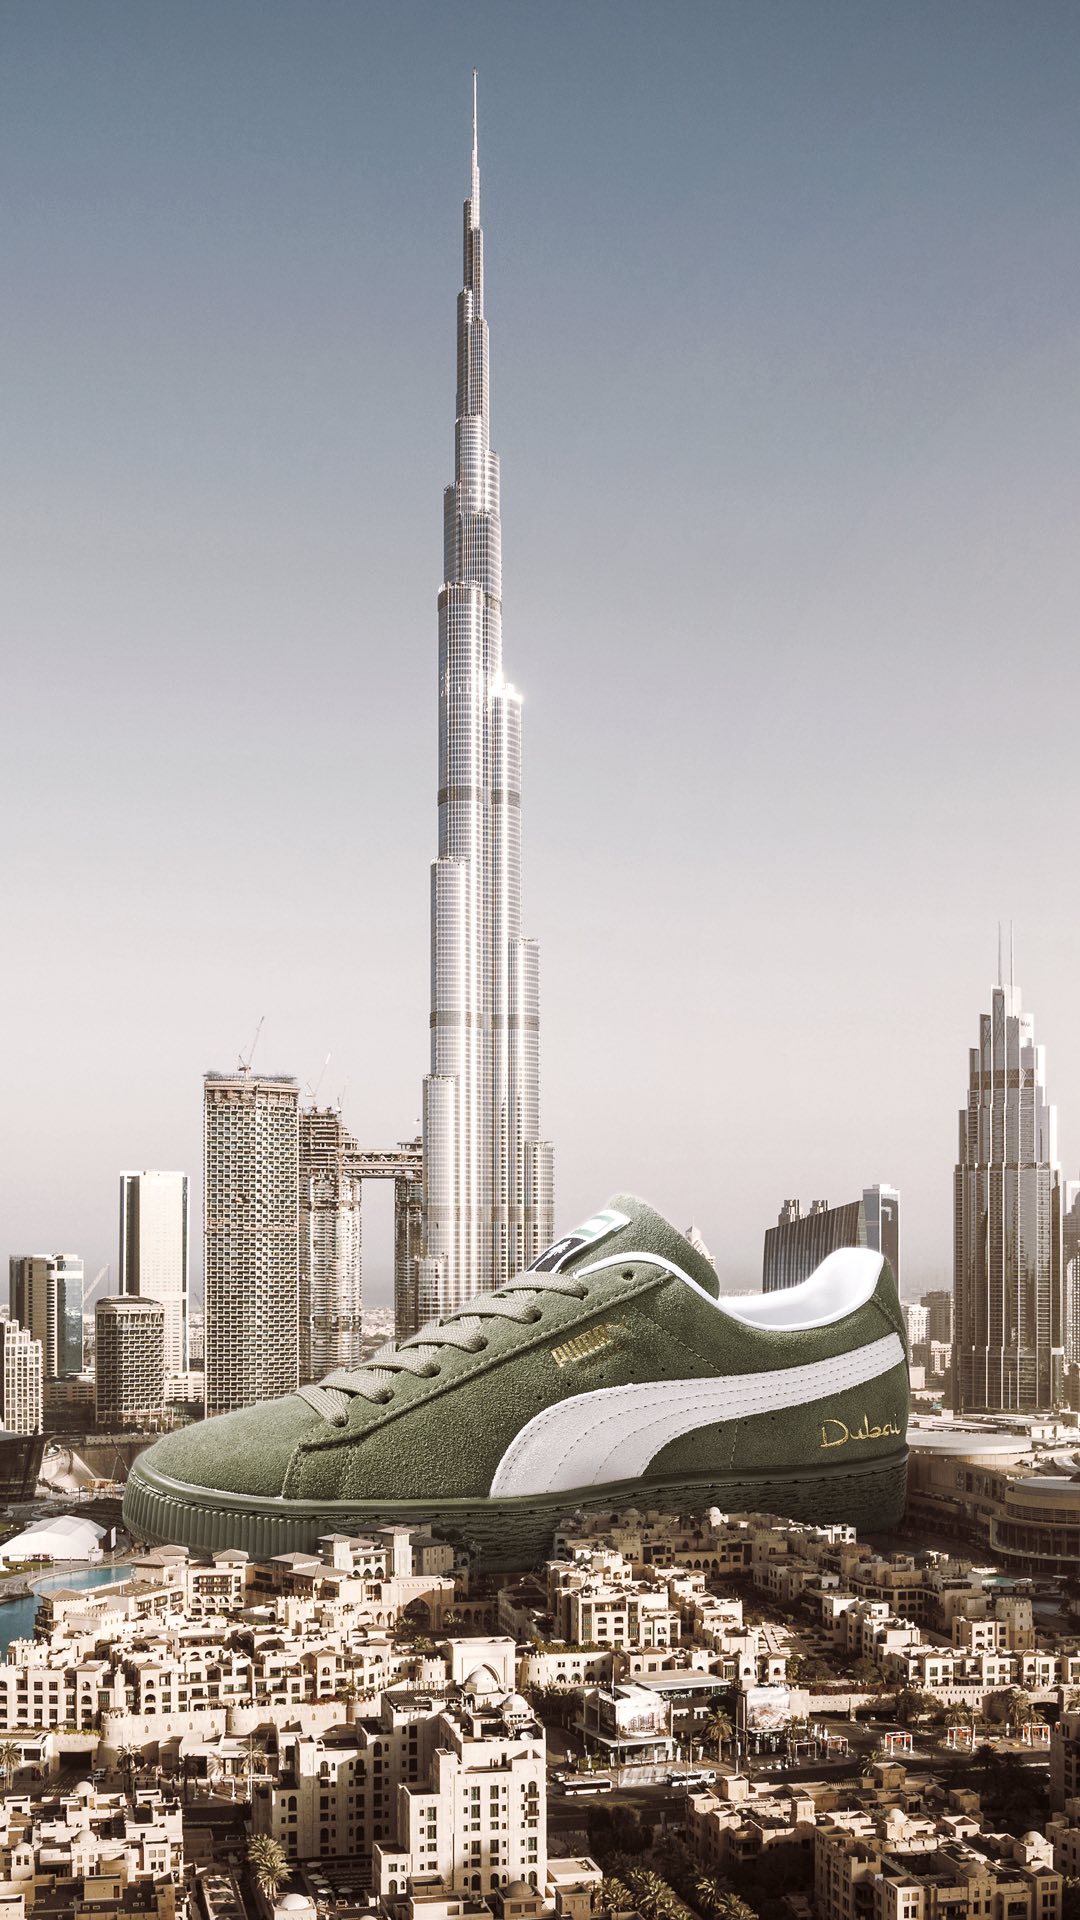 Dubai-inspired sneaker